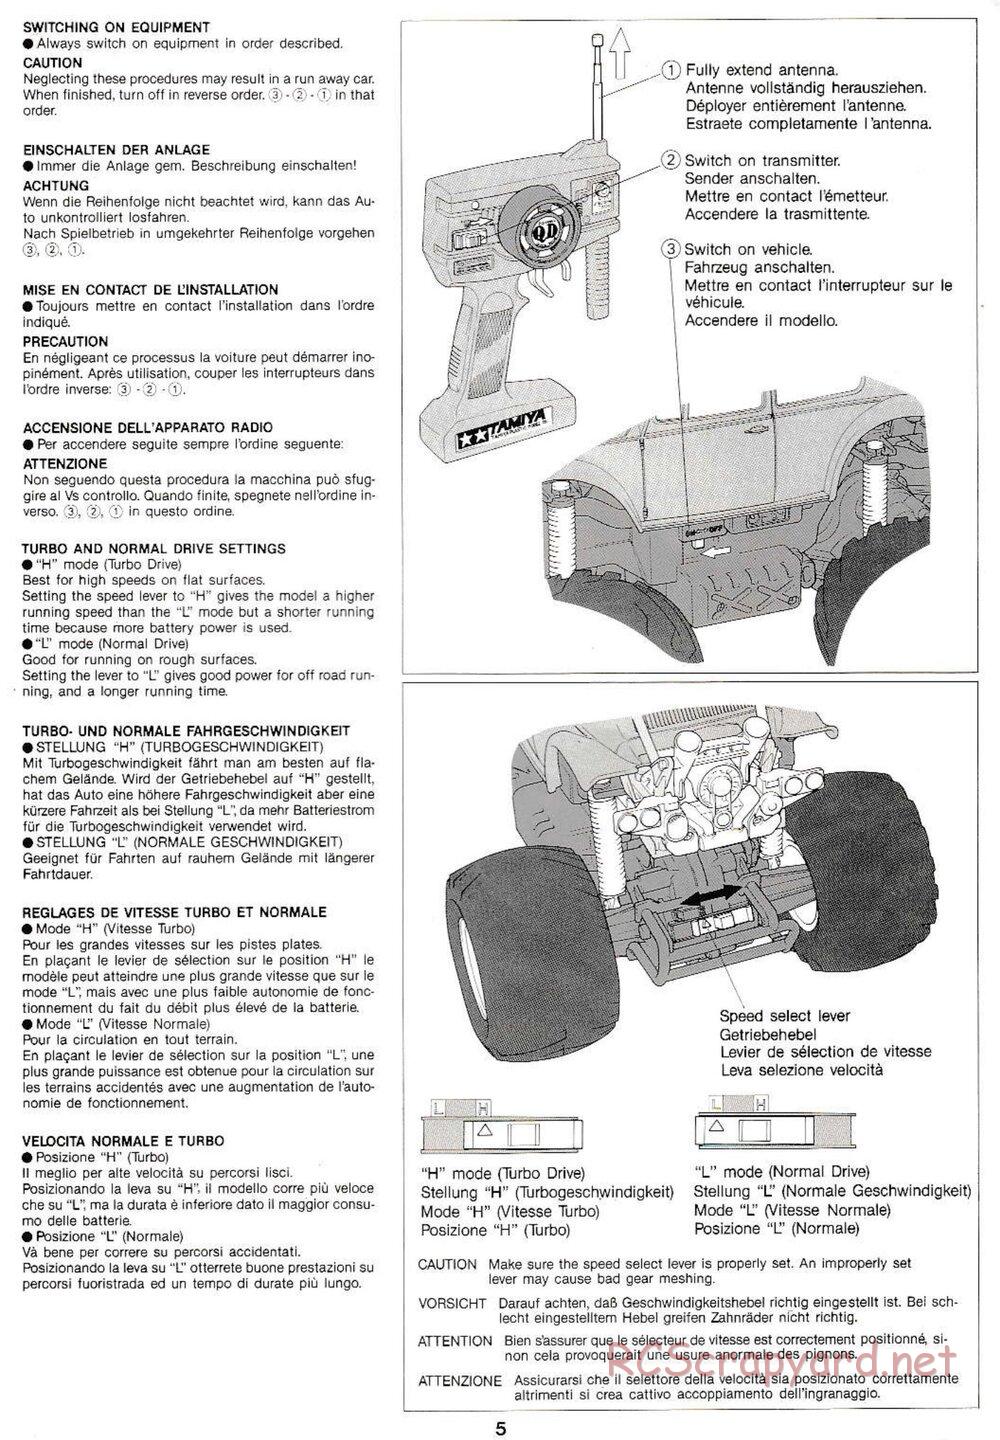 Tamiya - Monster Beetle QD Chassis - Manual - Page 5